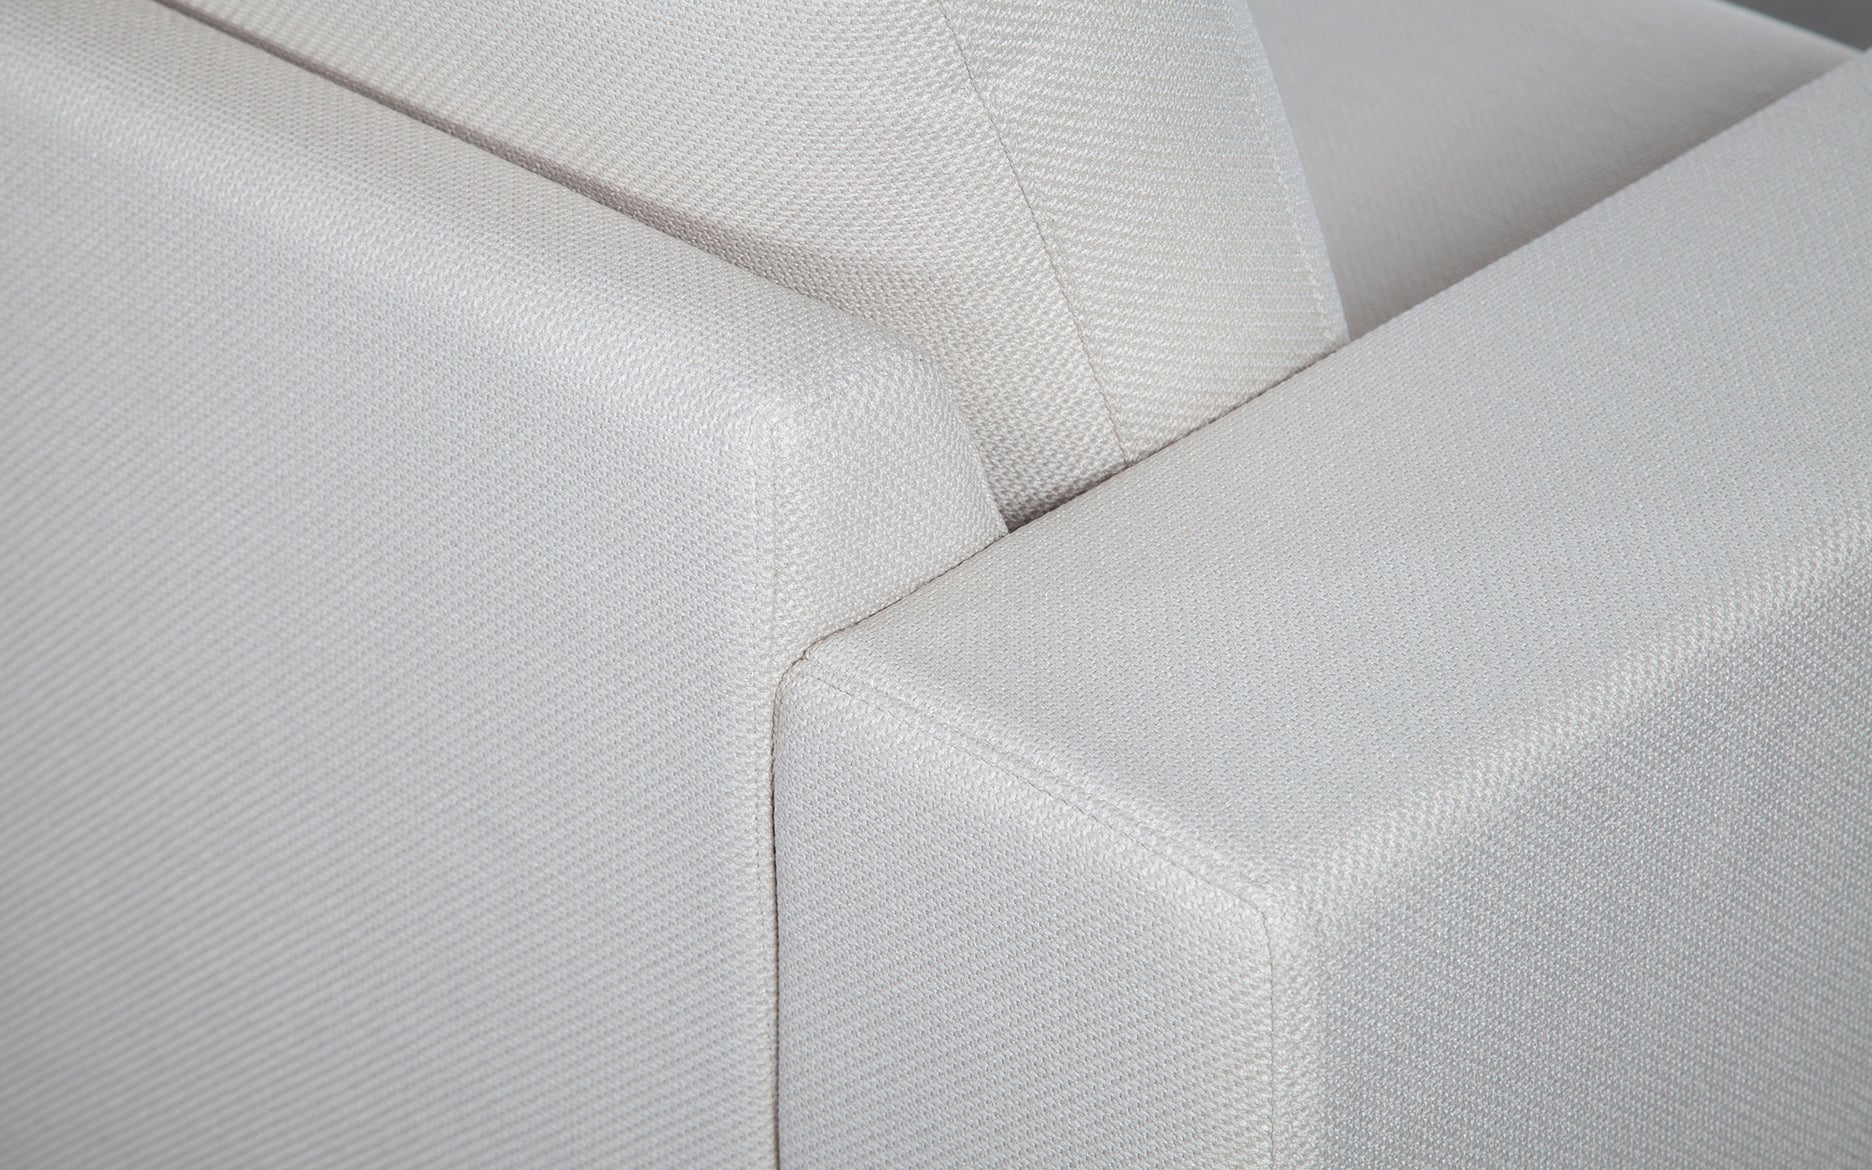 Sofa Formato (2.80)